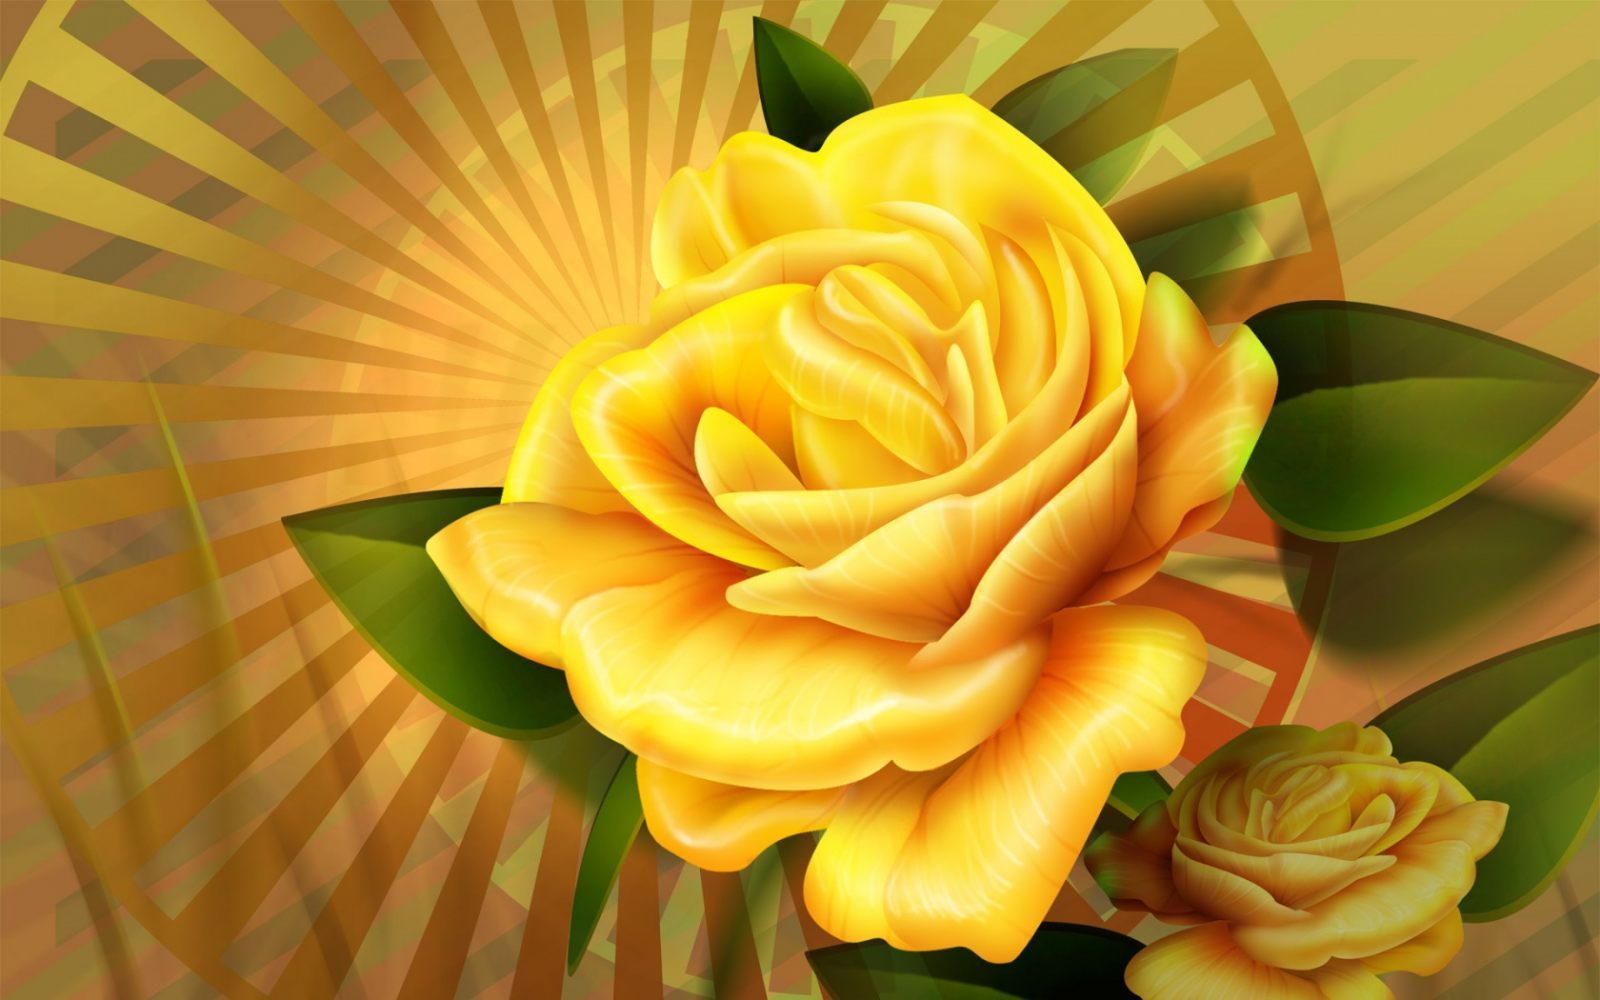 Dibujo de una rosa amarilla